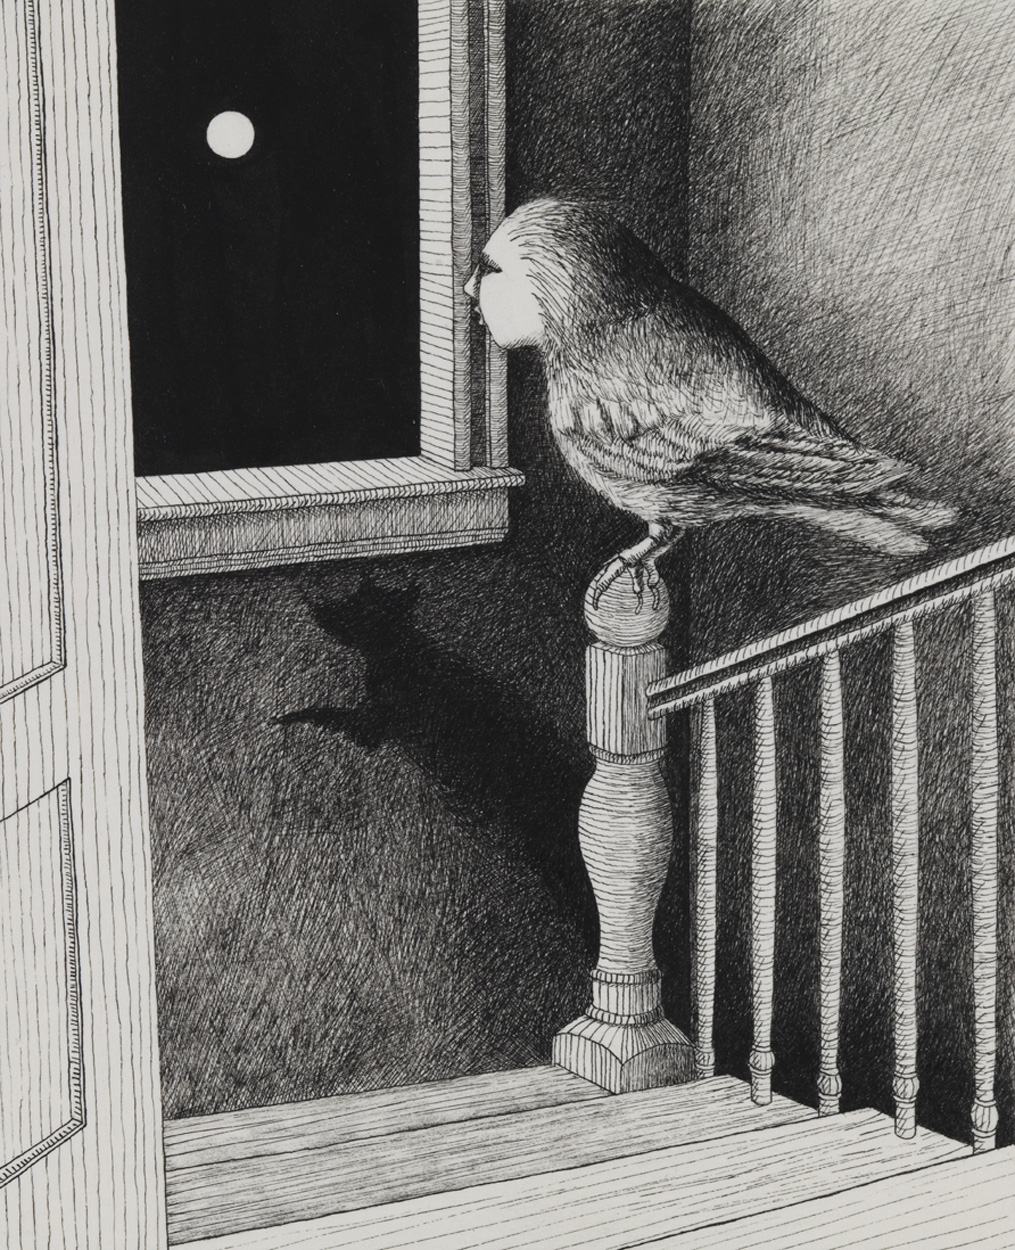 [Bird on stairs]